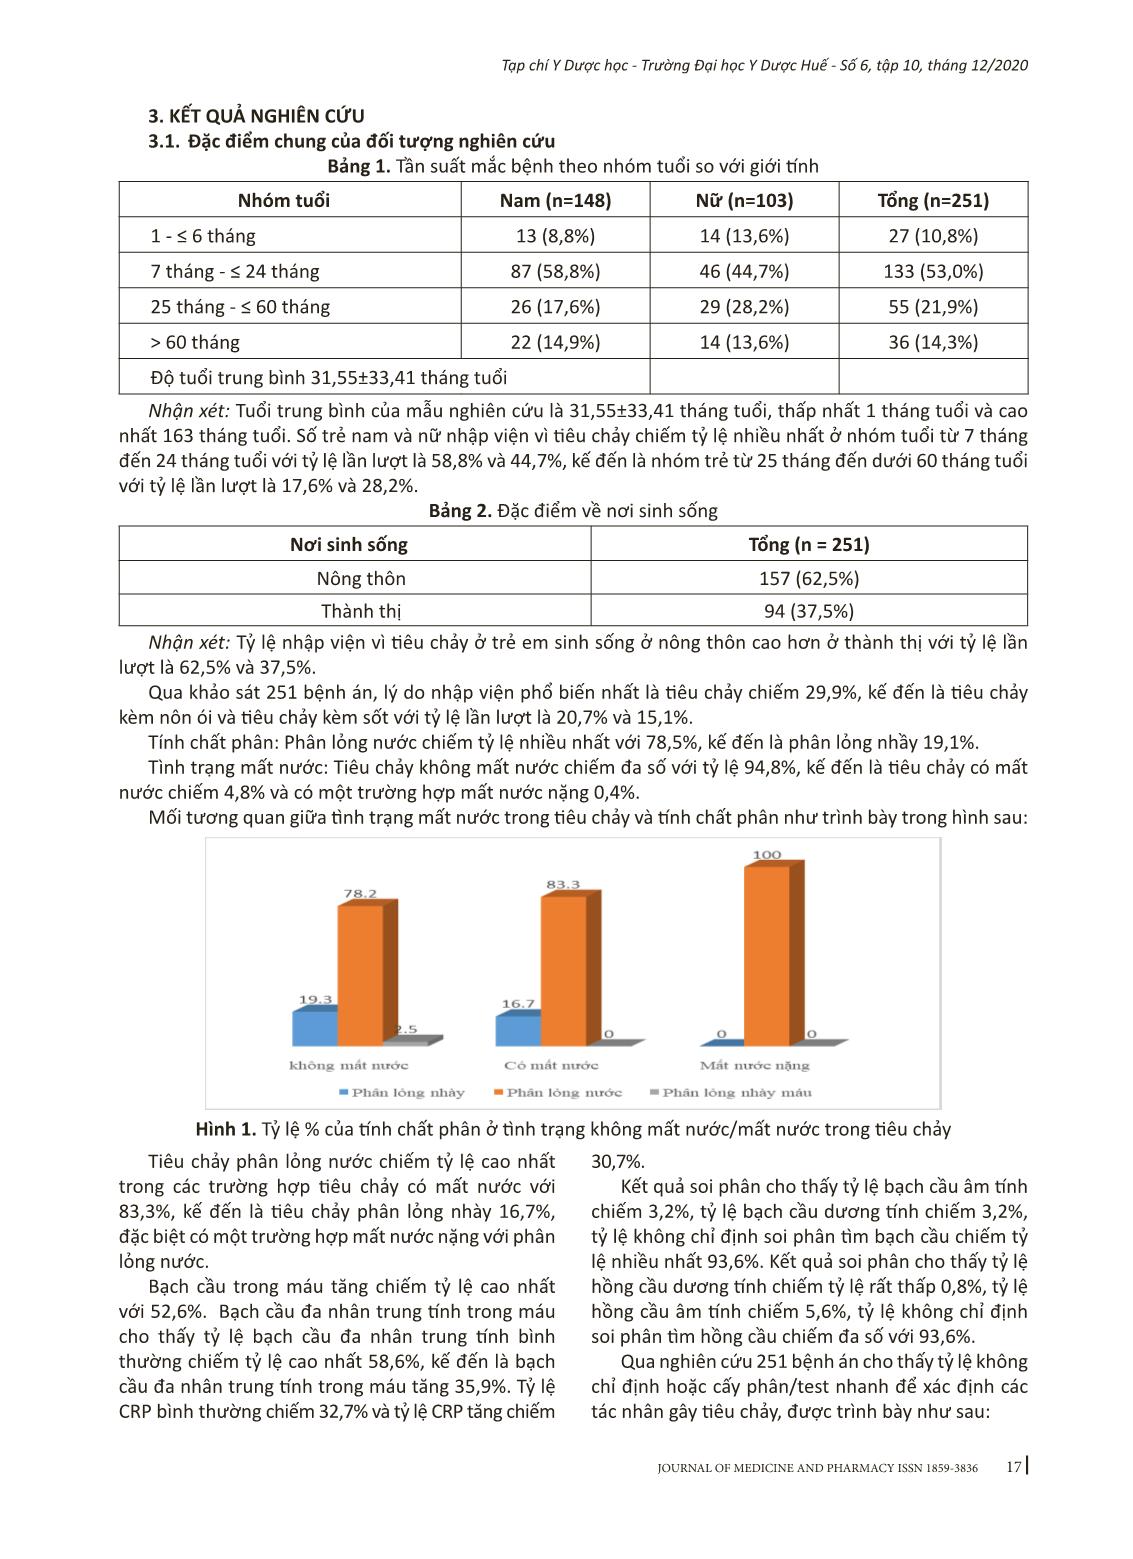 Đánh giá tình hình sử dụng kháng sinh trong điều trị tiêu chảy ở bệnh nhi nội trú tại Khoa Nhi - Bệnh viện Đa khoa tỉnh Kiên Giang năm 2019-2020 trang 3